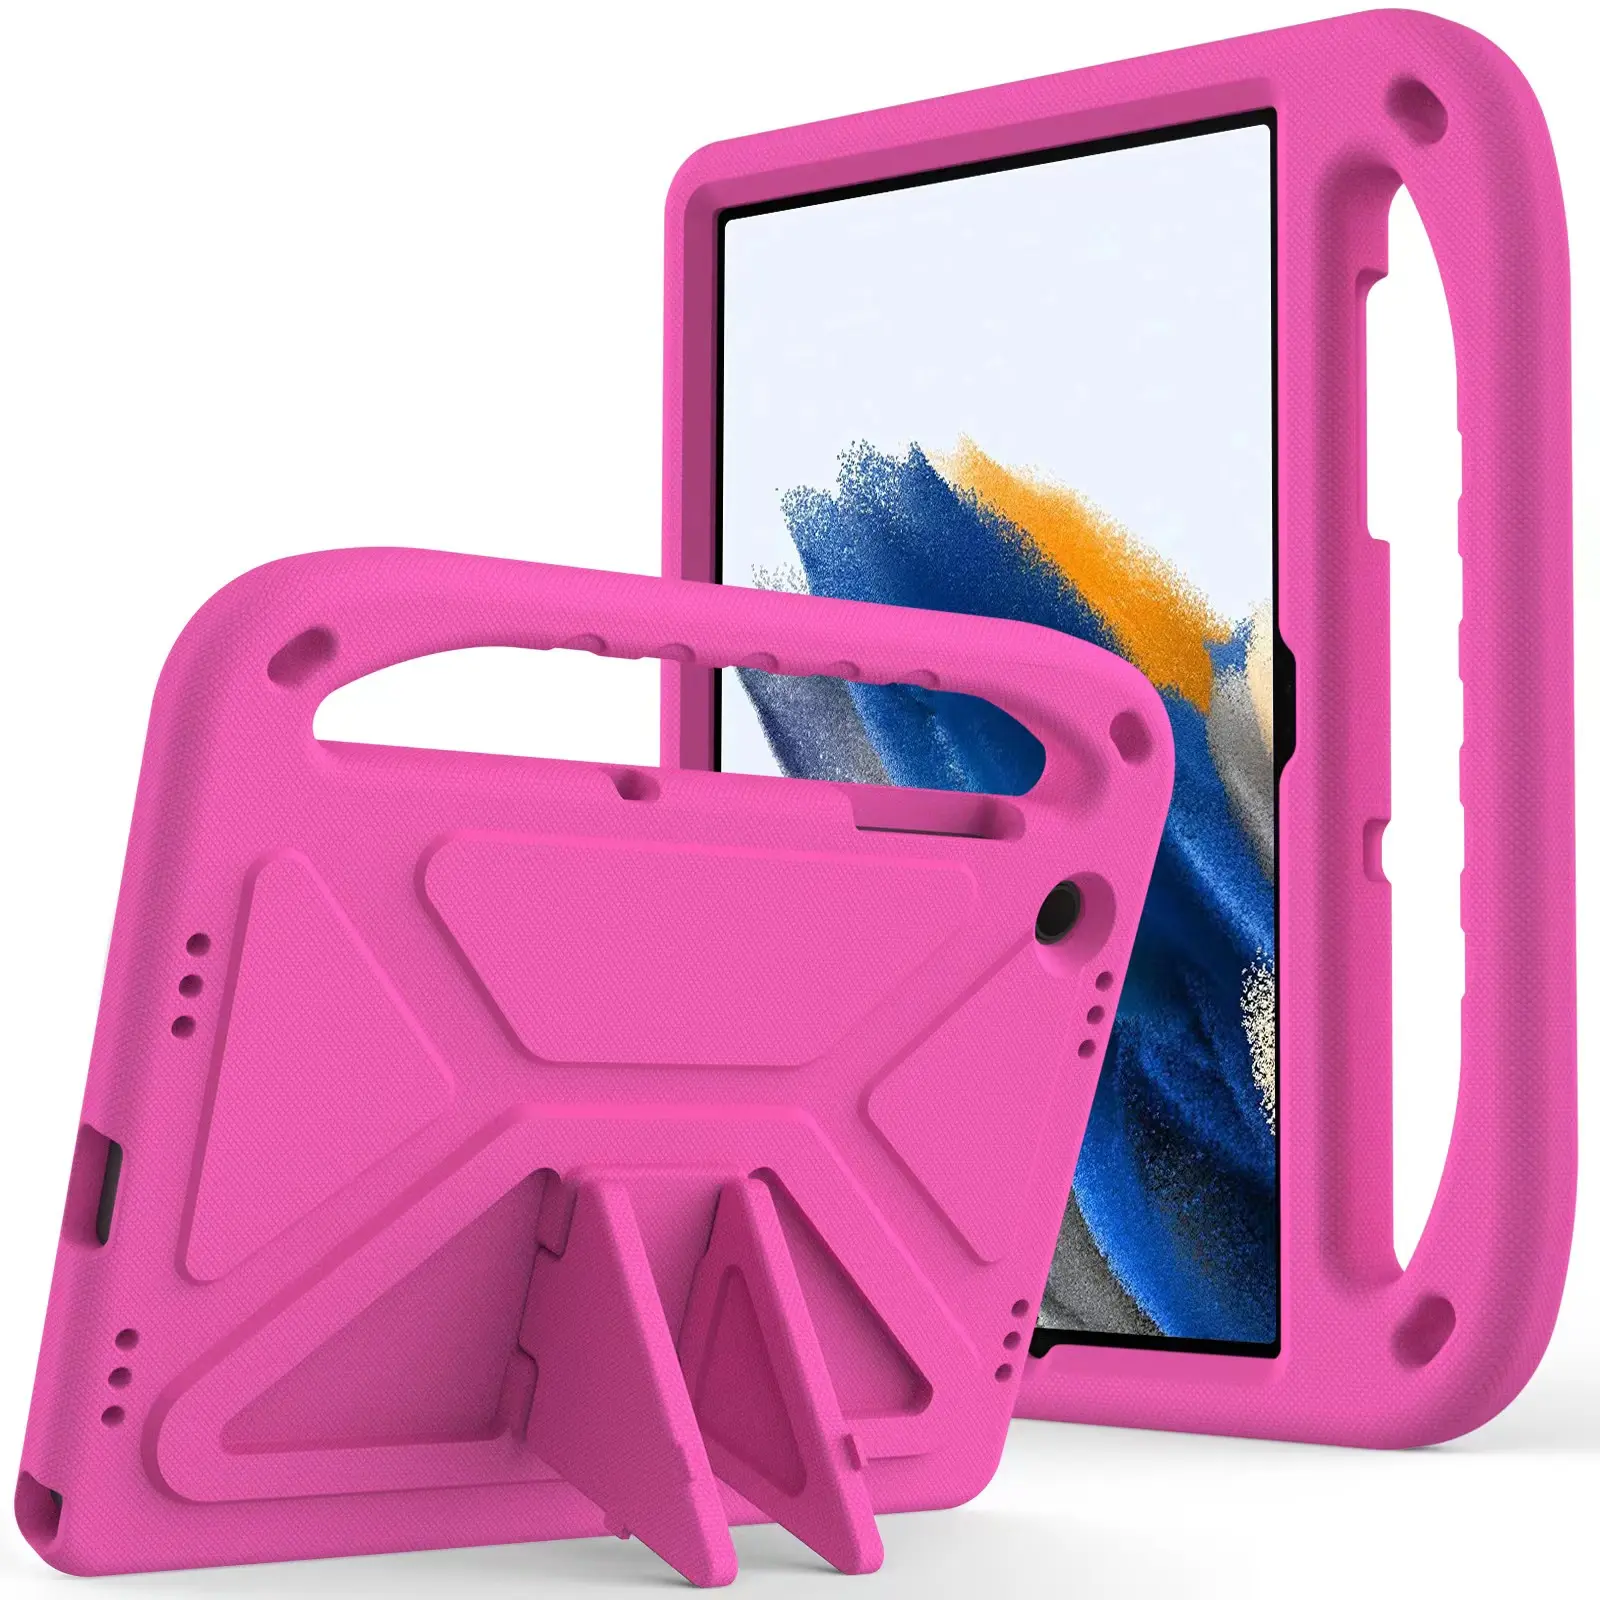 Bán buôn chống sốc EVA Tablet bìa cho Samsung A9 cộng với tablet Trường hợp với xử lý Tablet bao gồm trường hợp